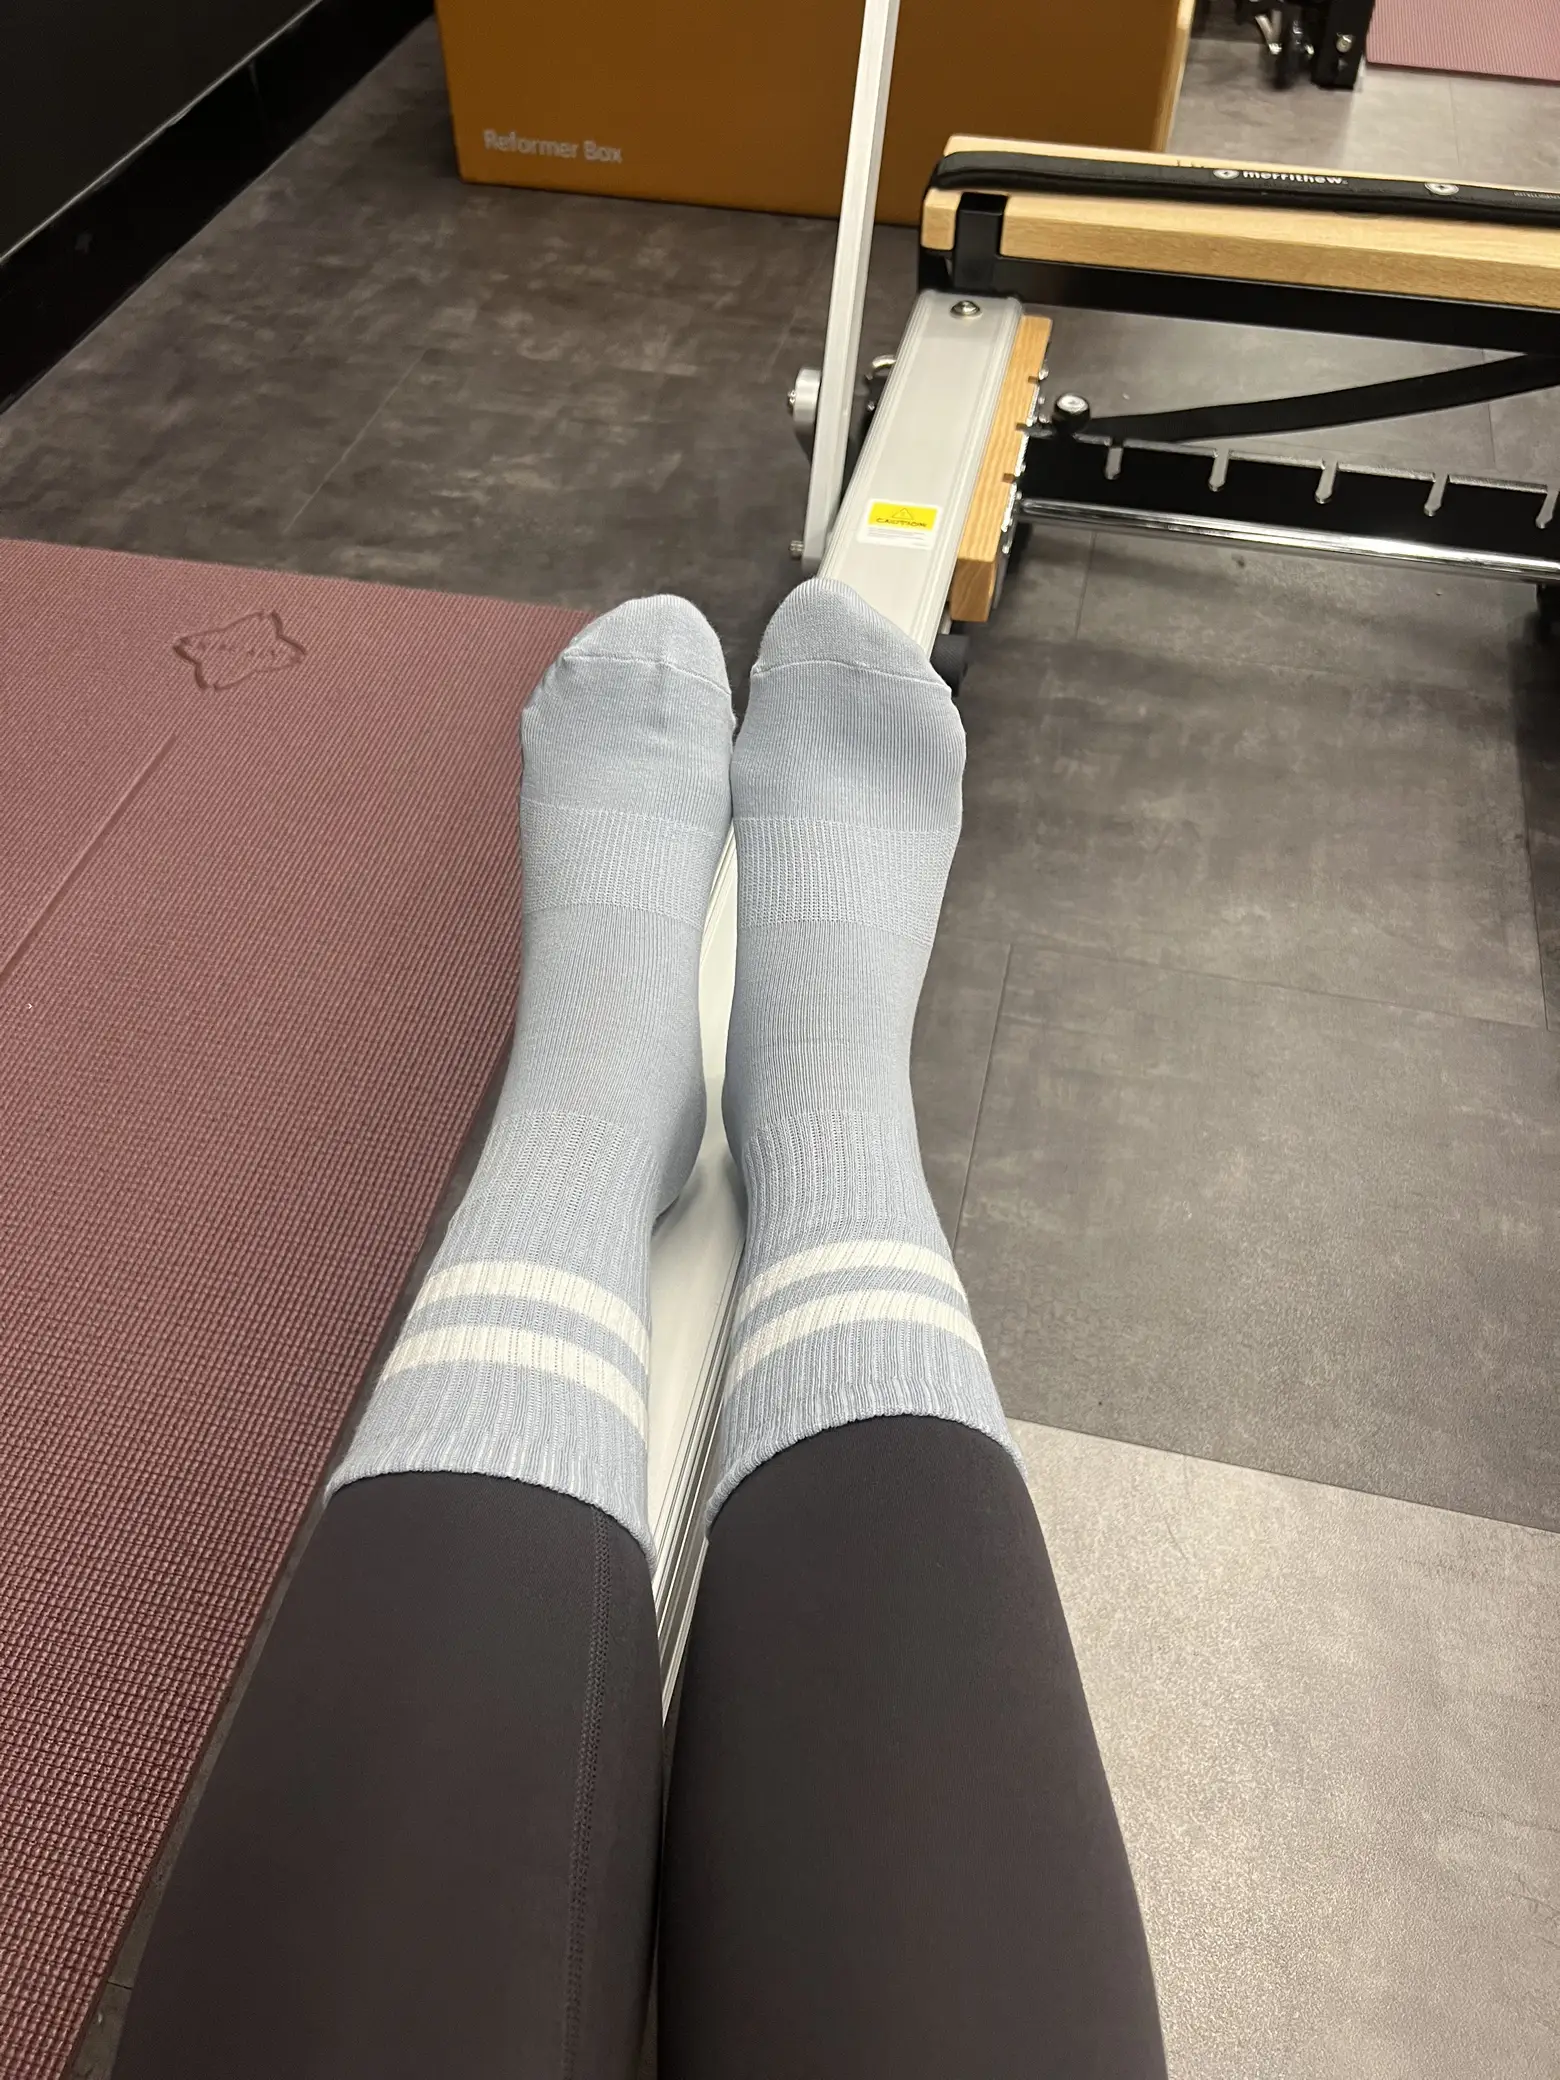 pilates princesses - where to get grip socks